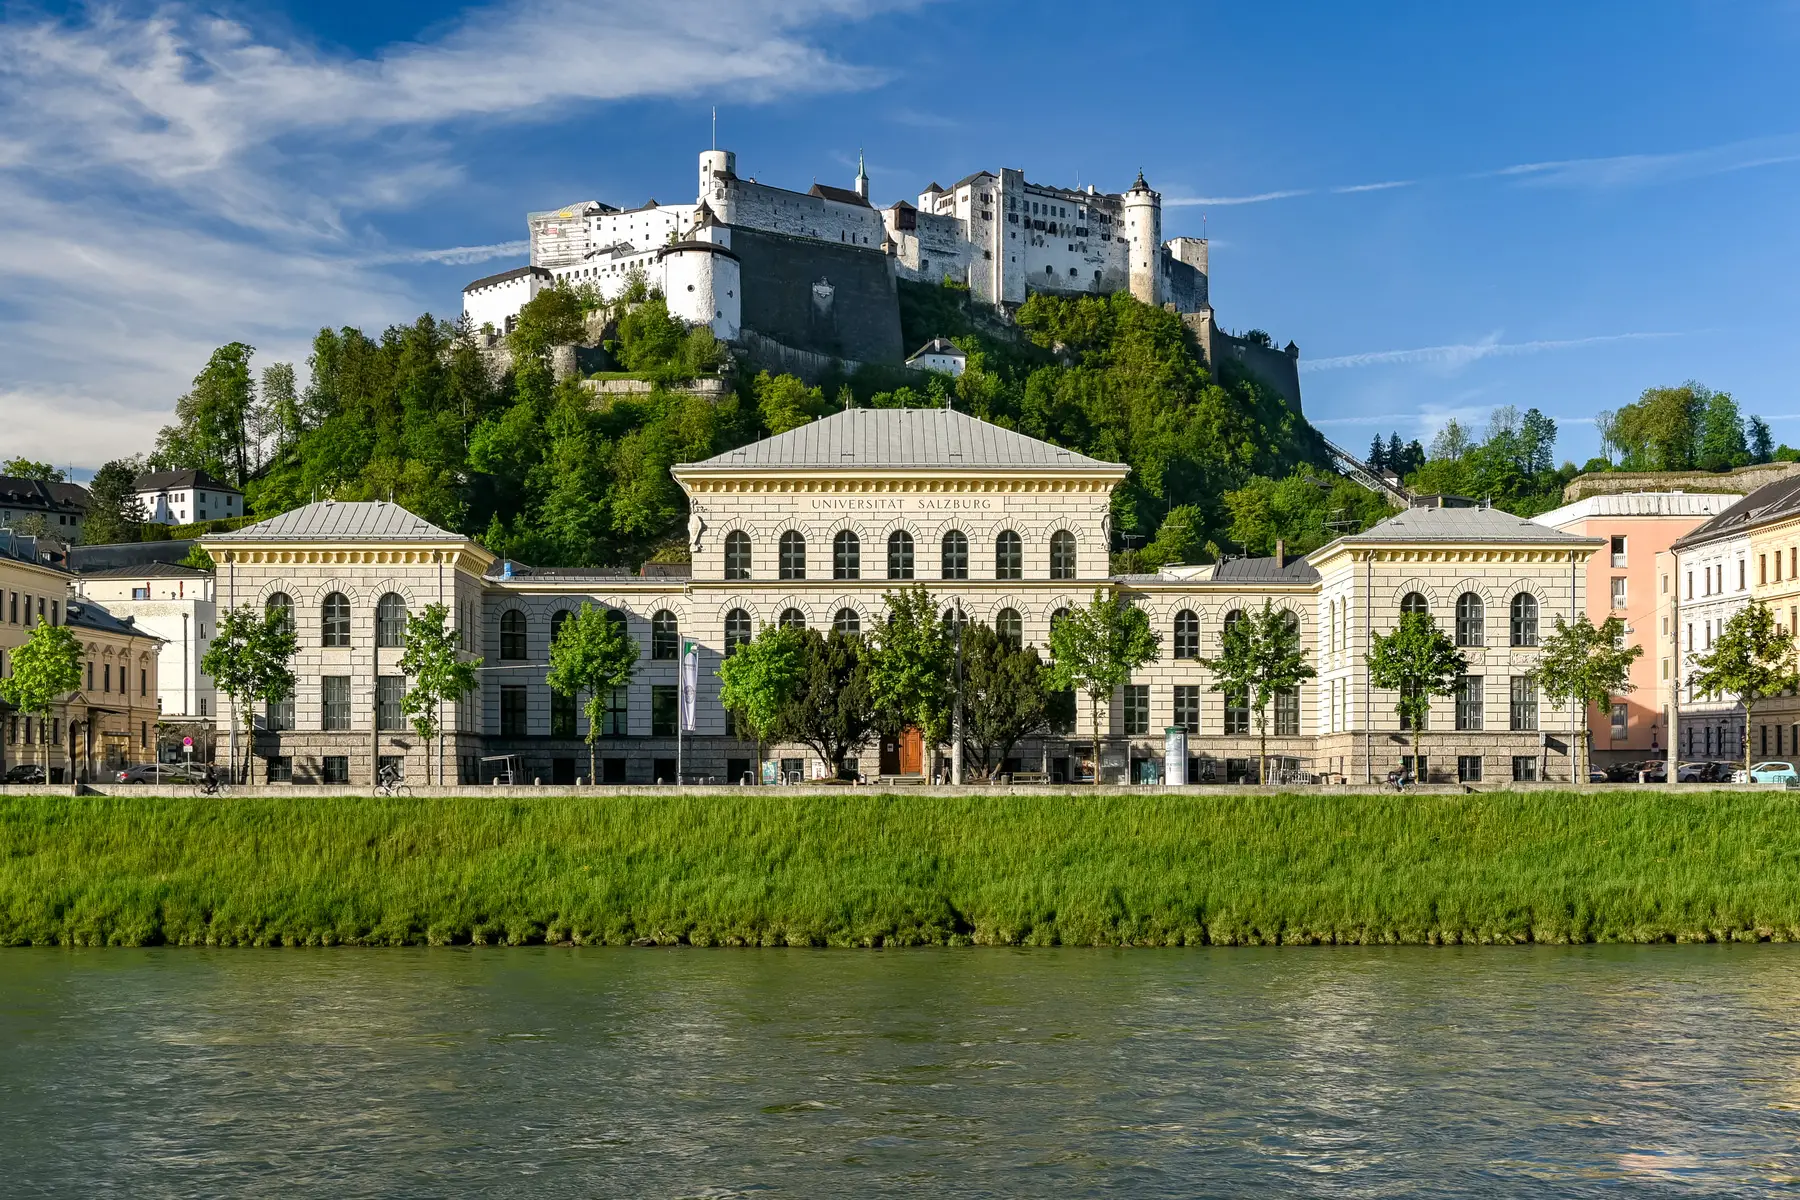 The University of Salzburg